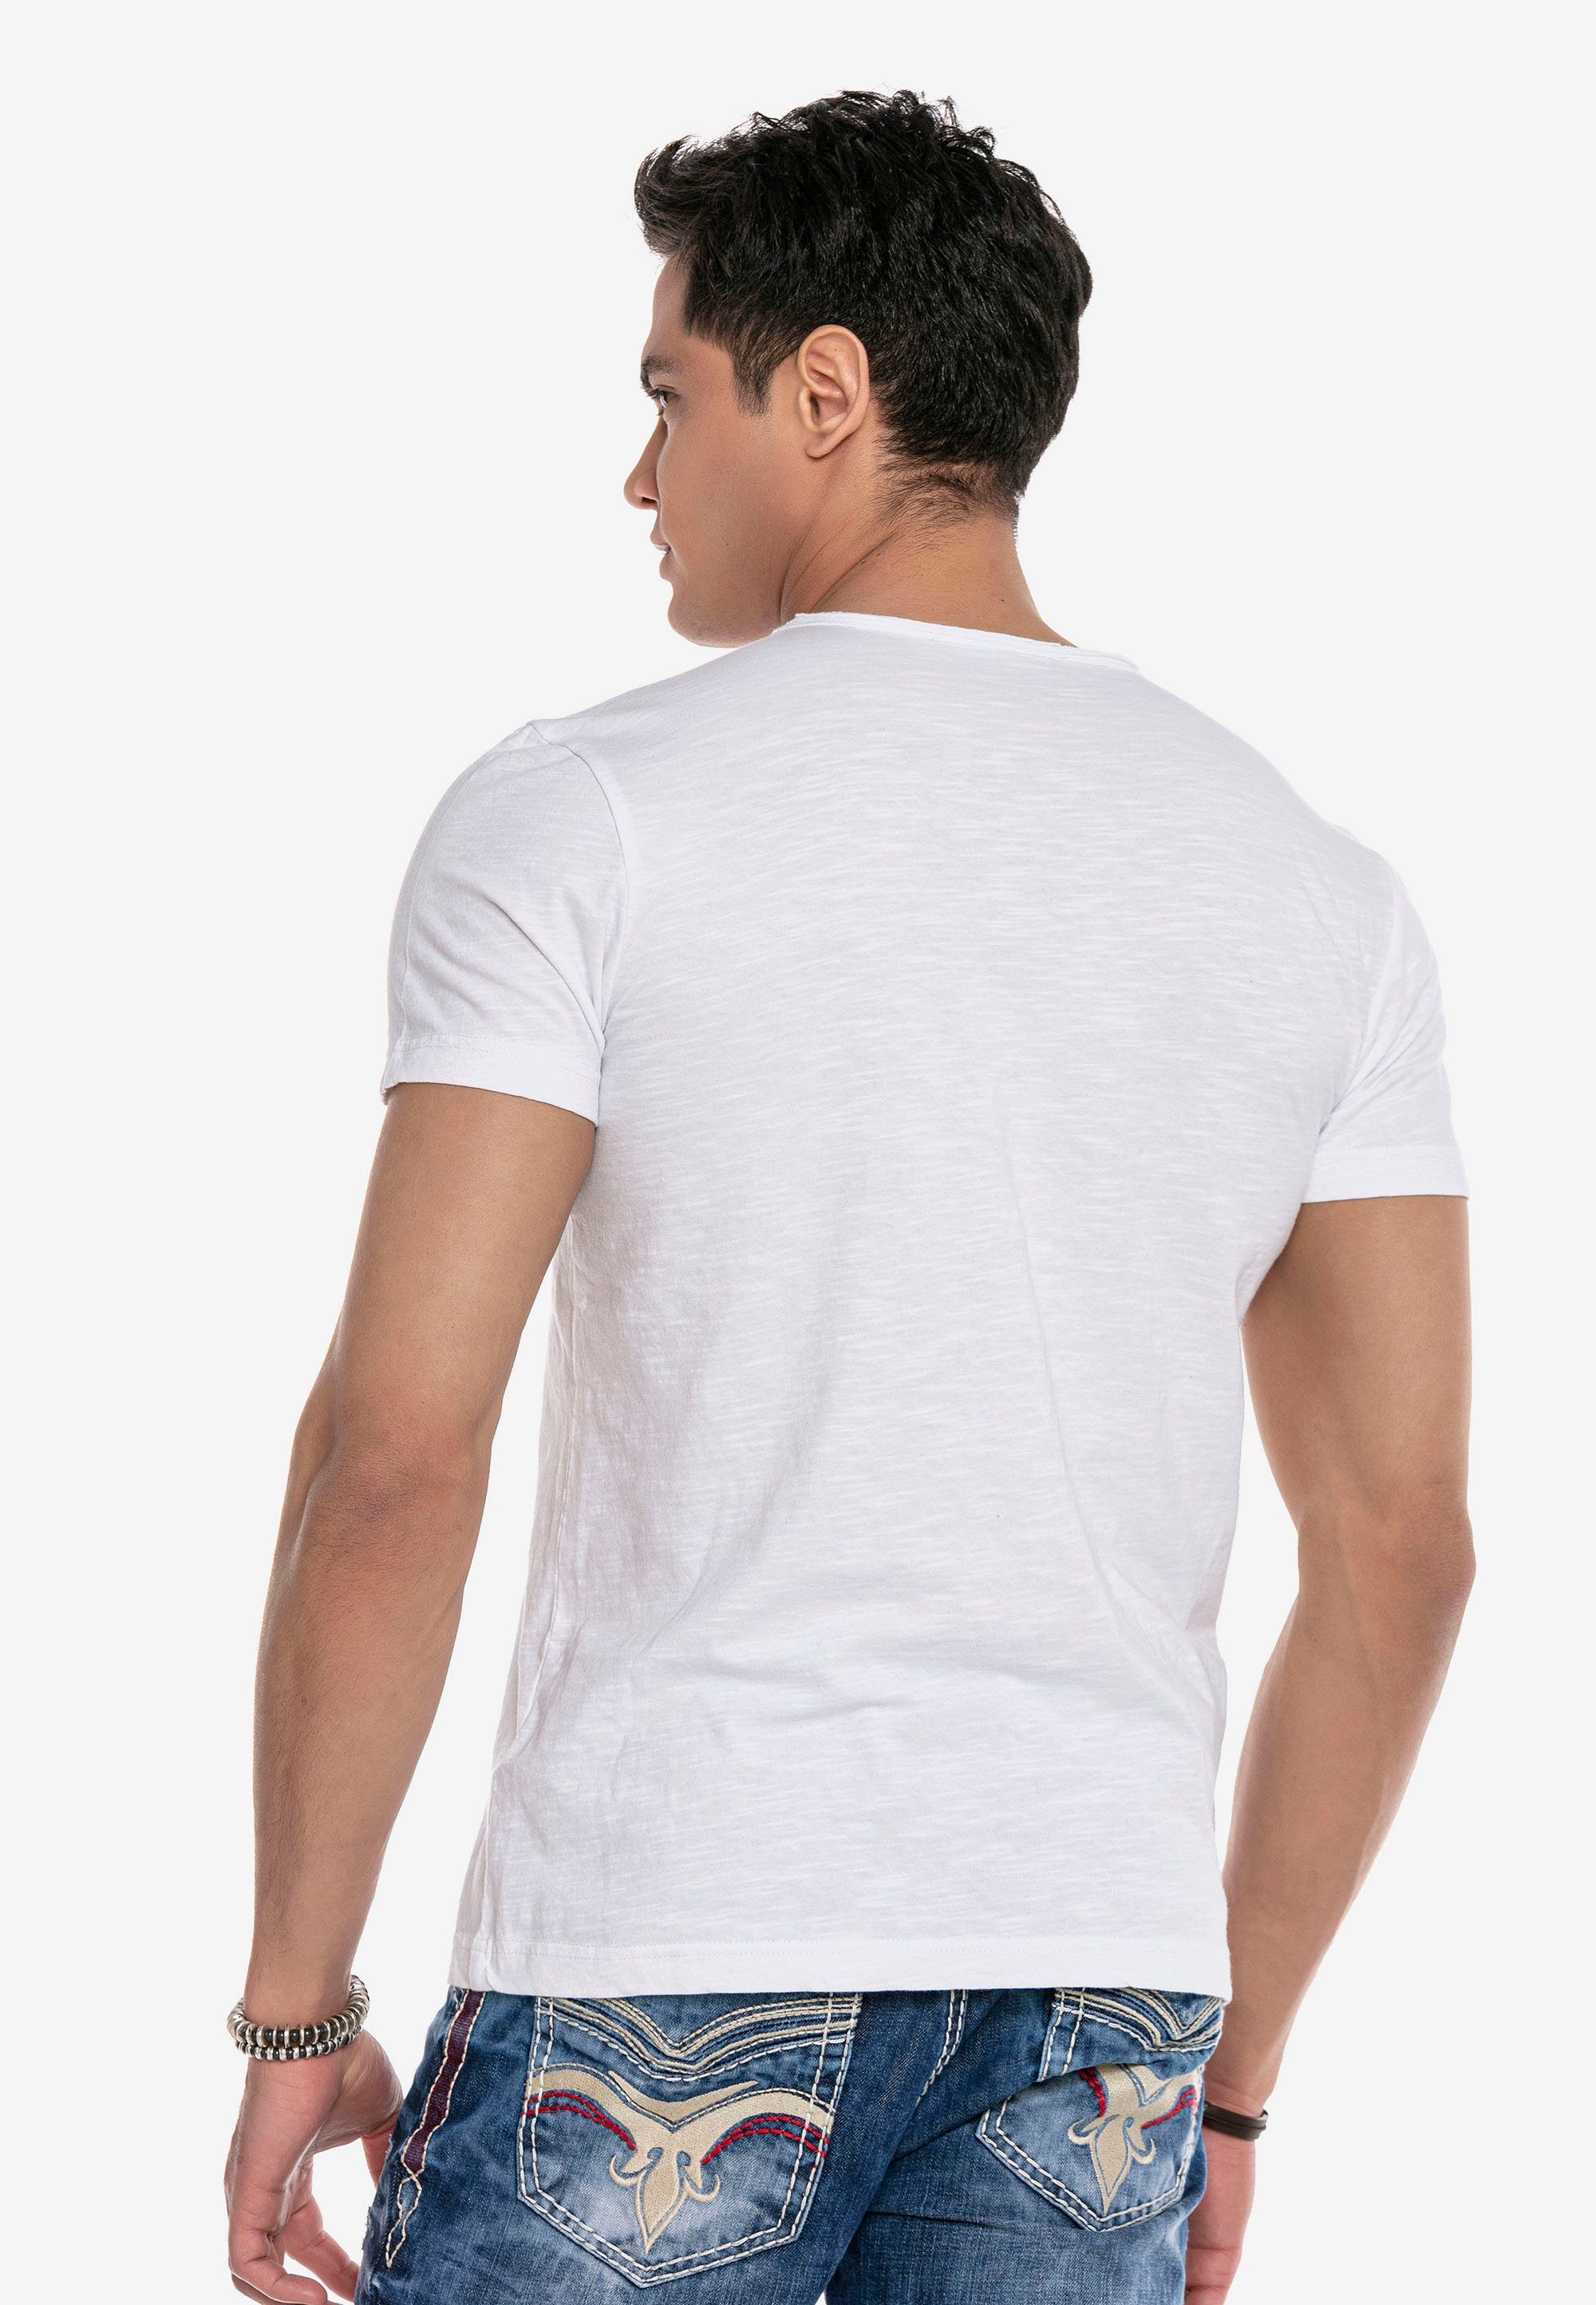 Cipo & Baxx sportlichen T-Shirt CT648 Look im weiß